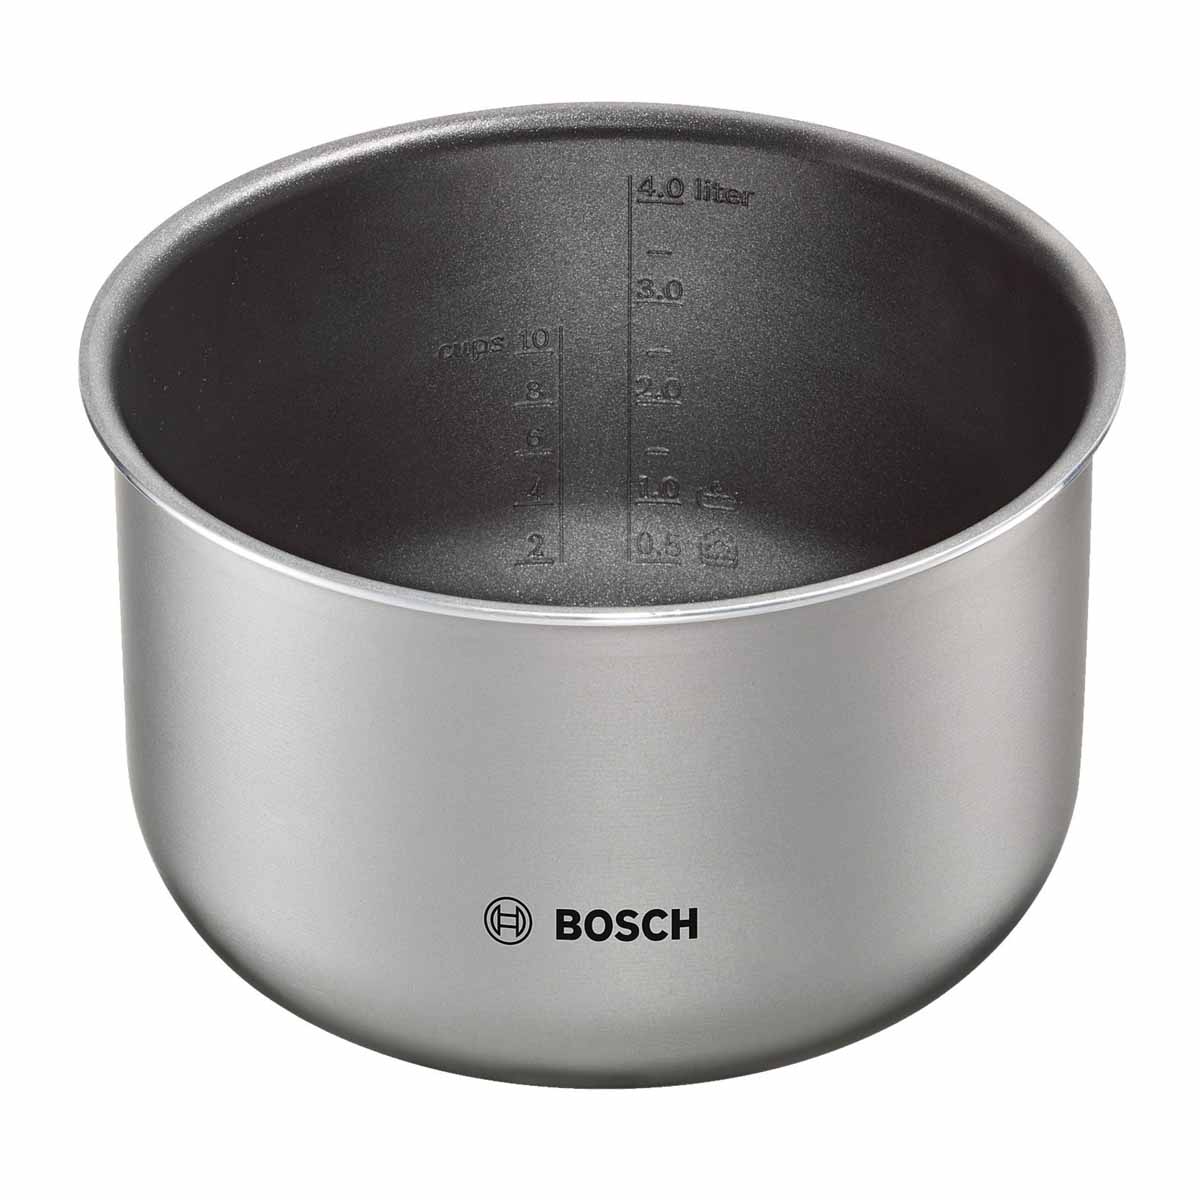  мультиварки Bosch MUC22B42 ️  по цене 4990 р.